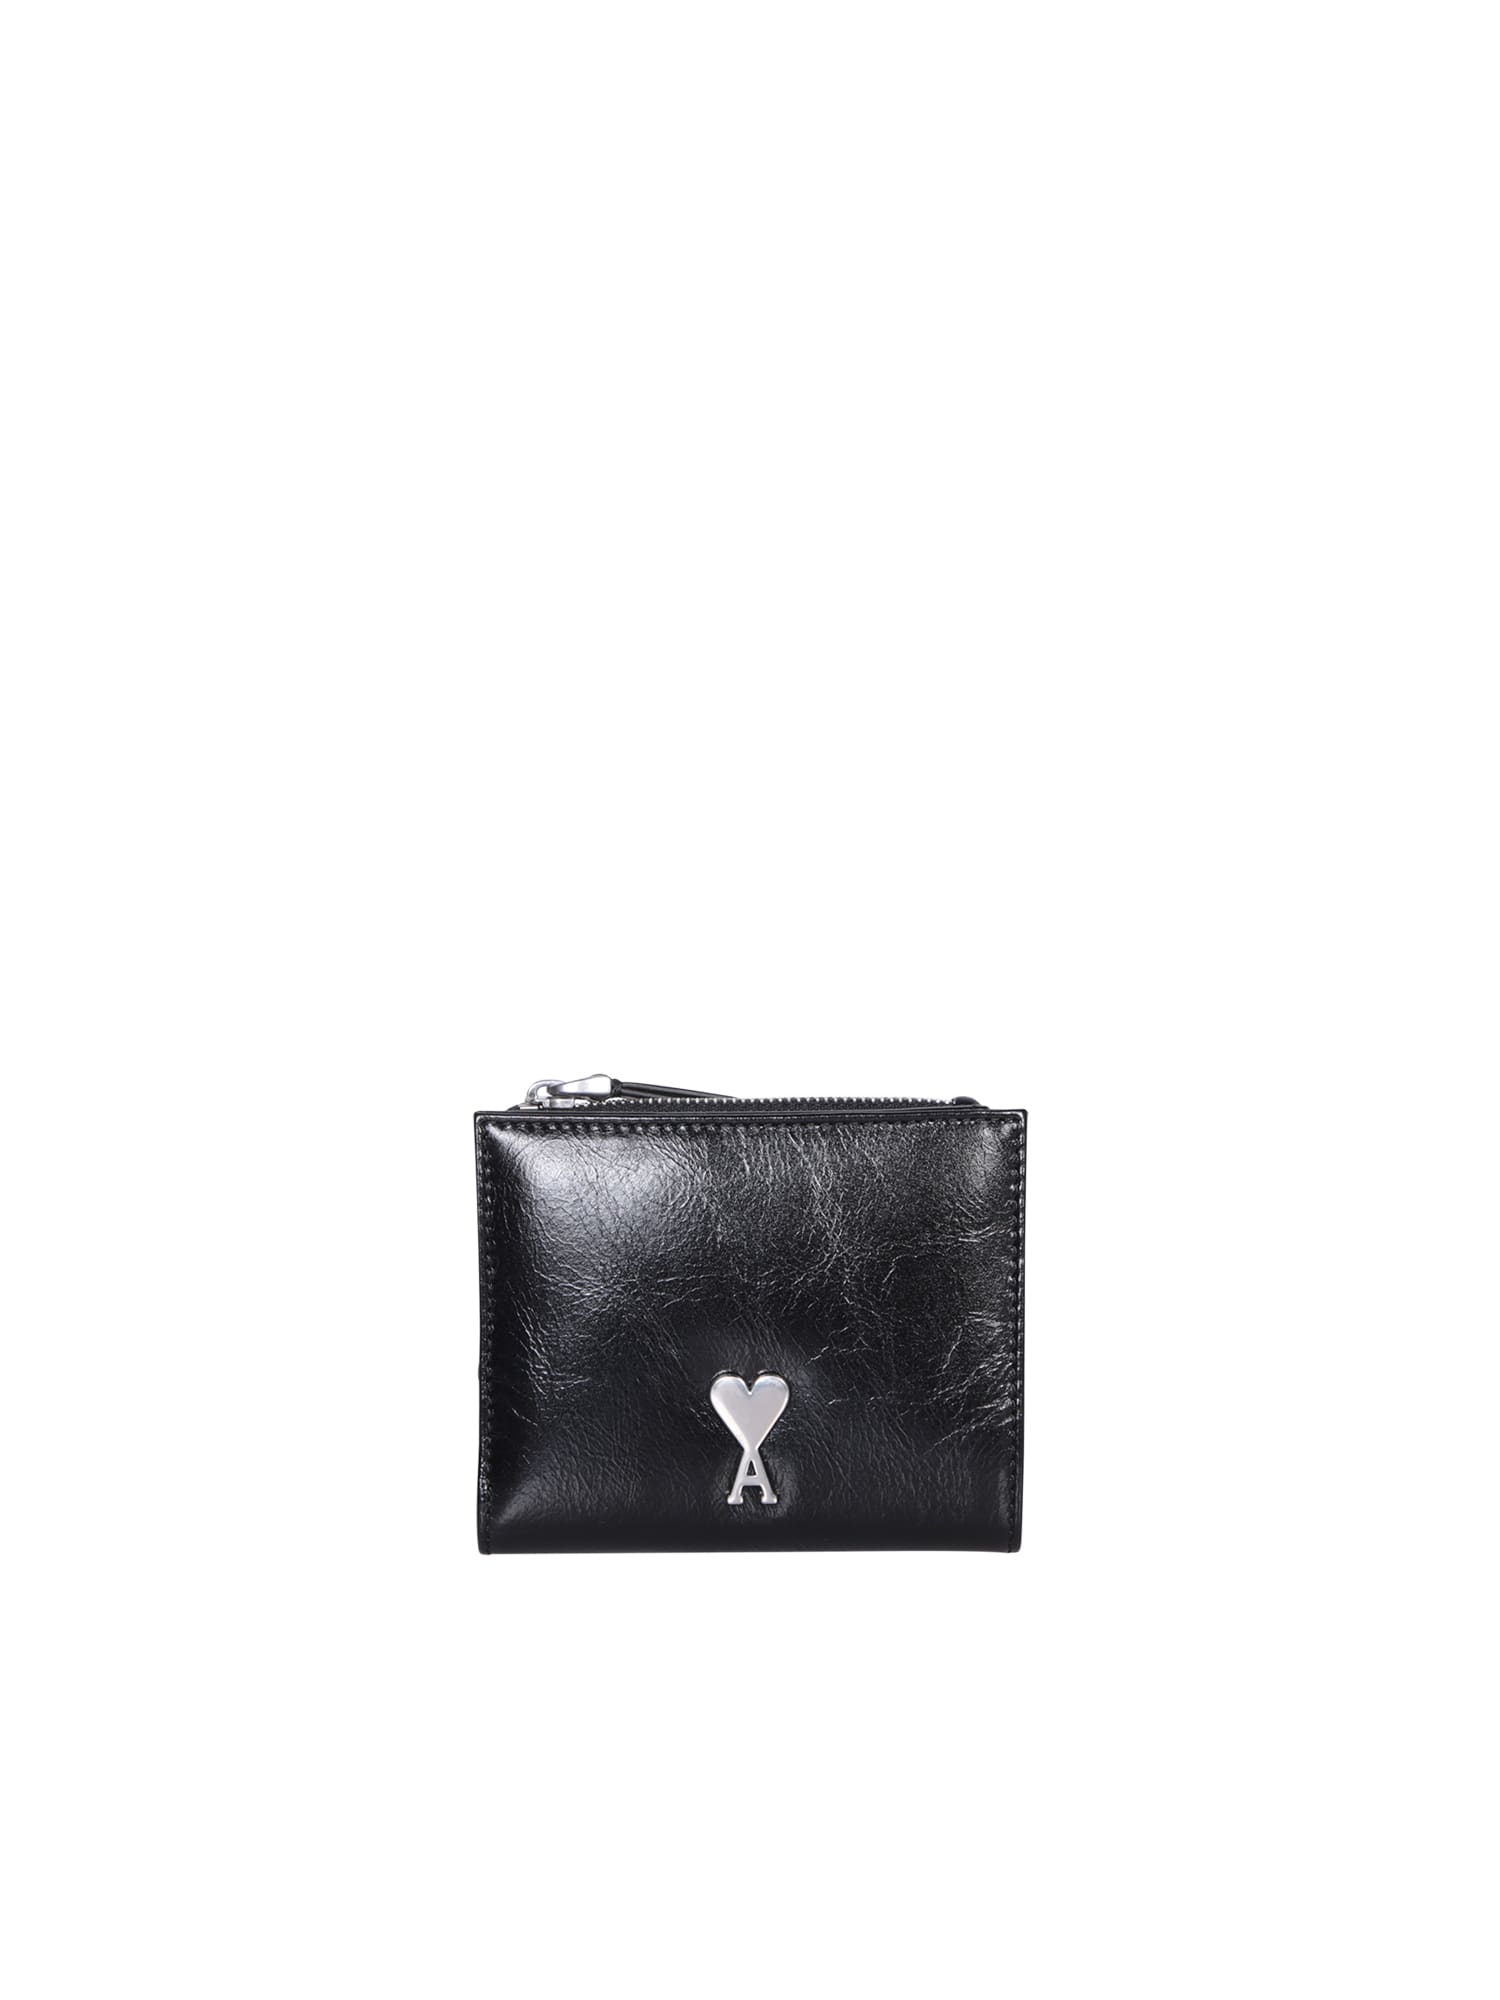 Ami Paris Voulez Black Leather Wallet